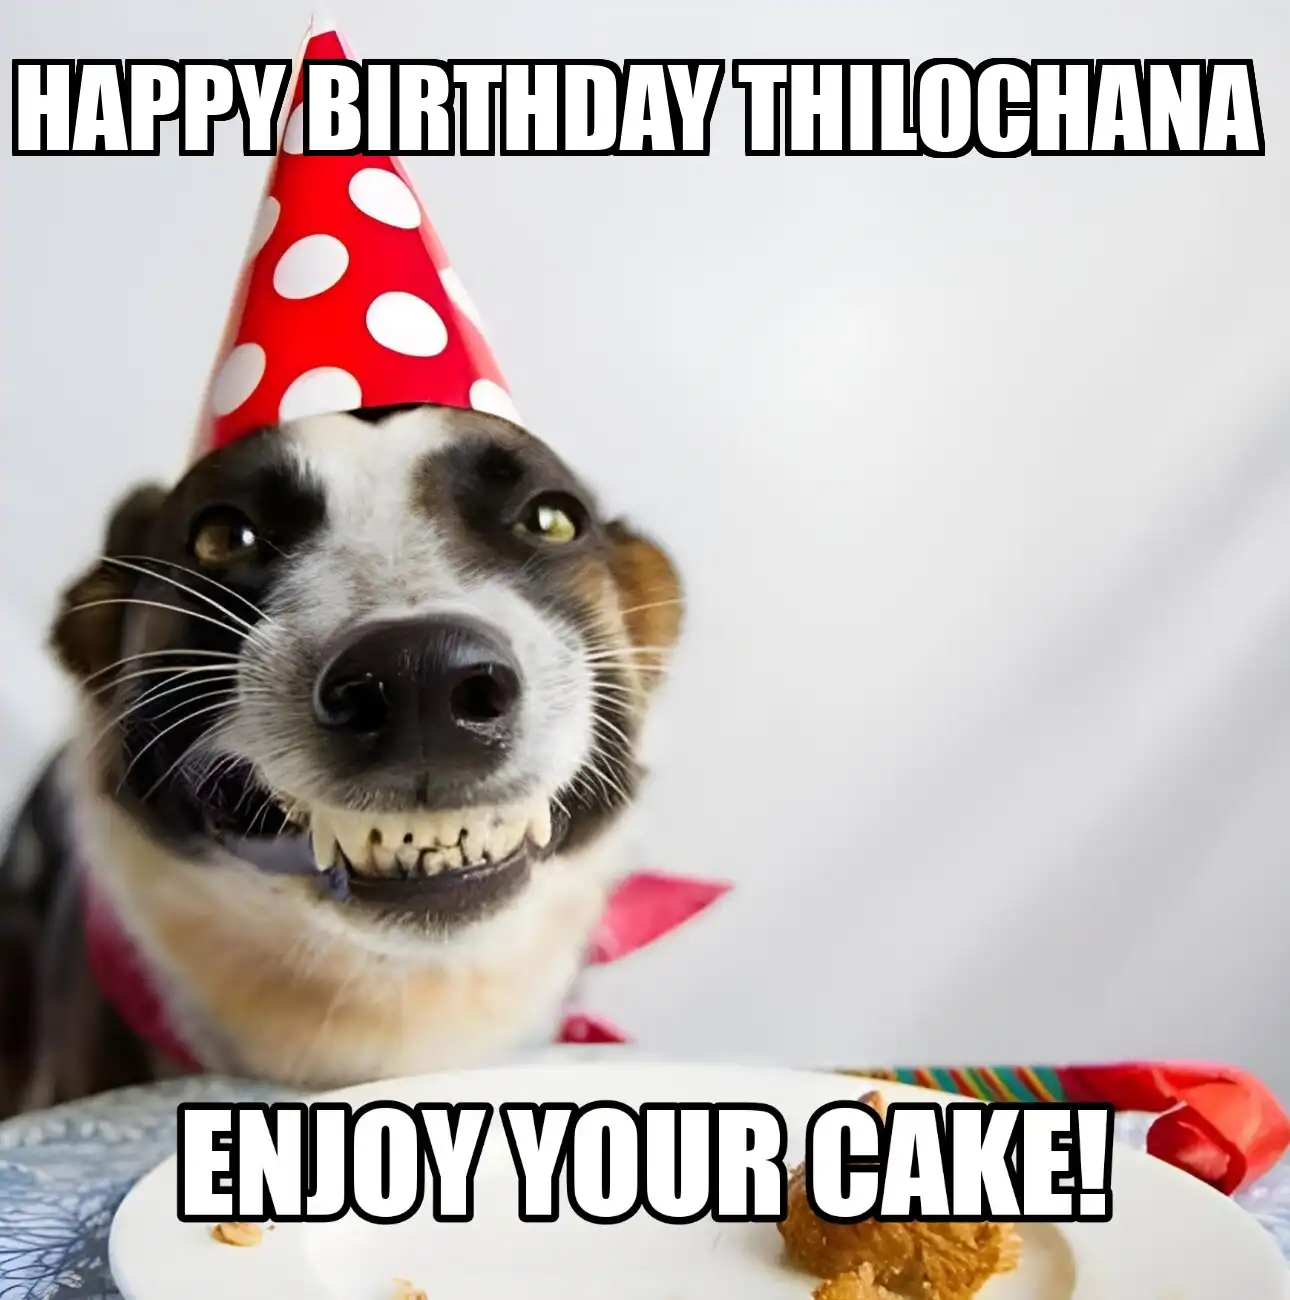 Happy Birthday Thilochana Enjoy Your Cake Dog Meme